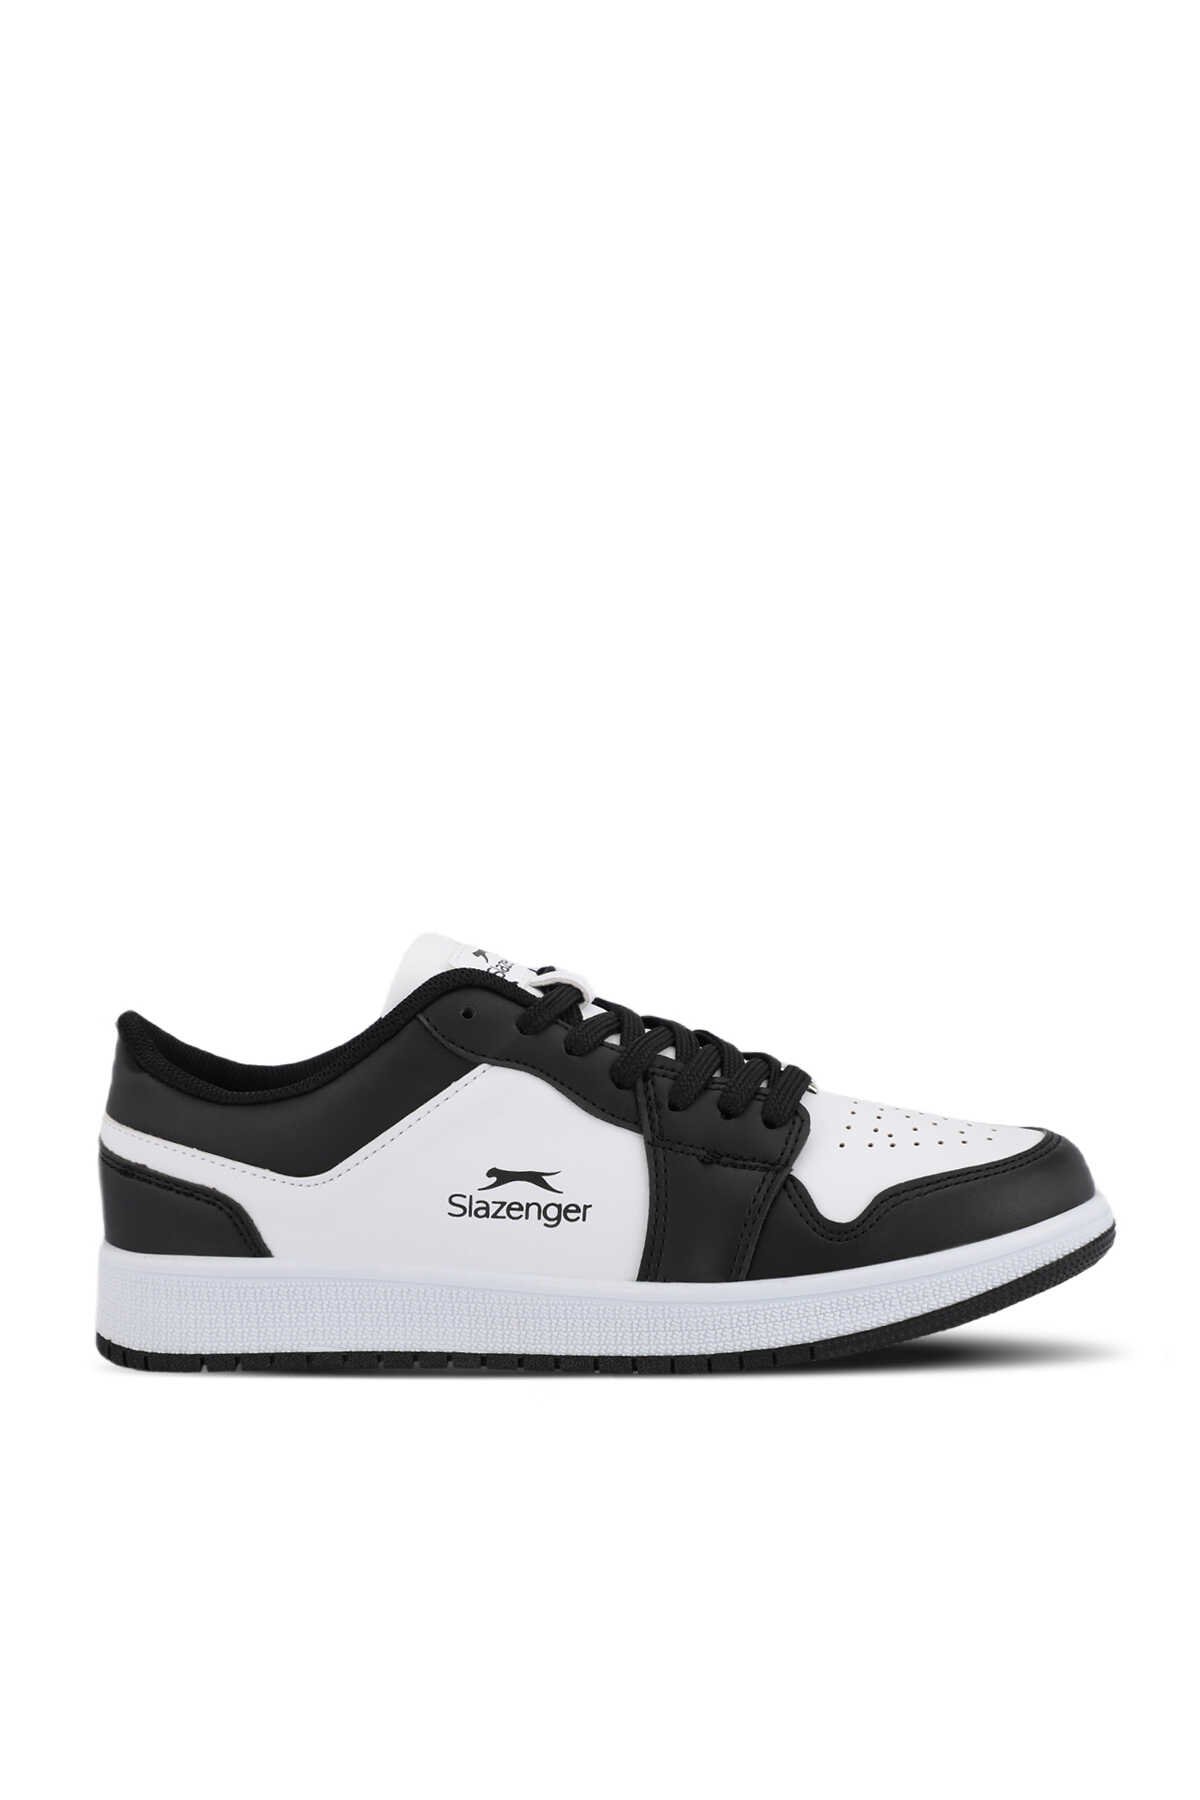 Slazenger - Slazenger PRINCE I Sneaker Kadın Ayakkabı Beyaz / Siyah